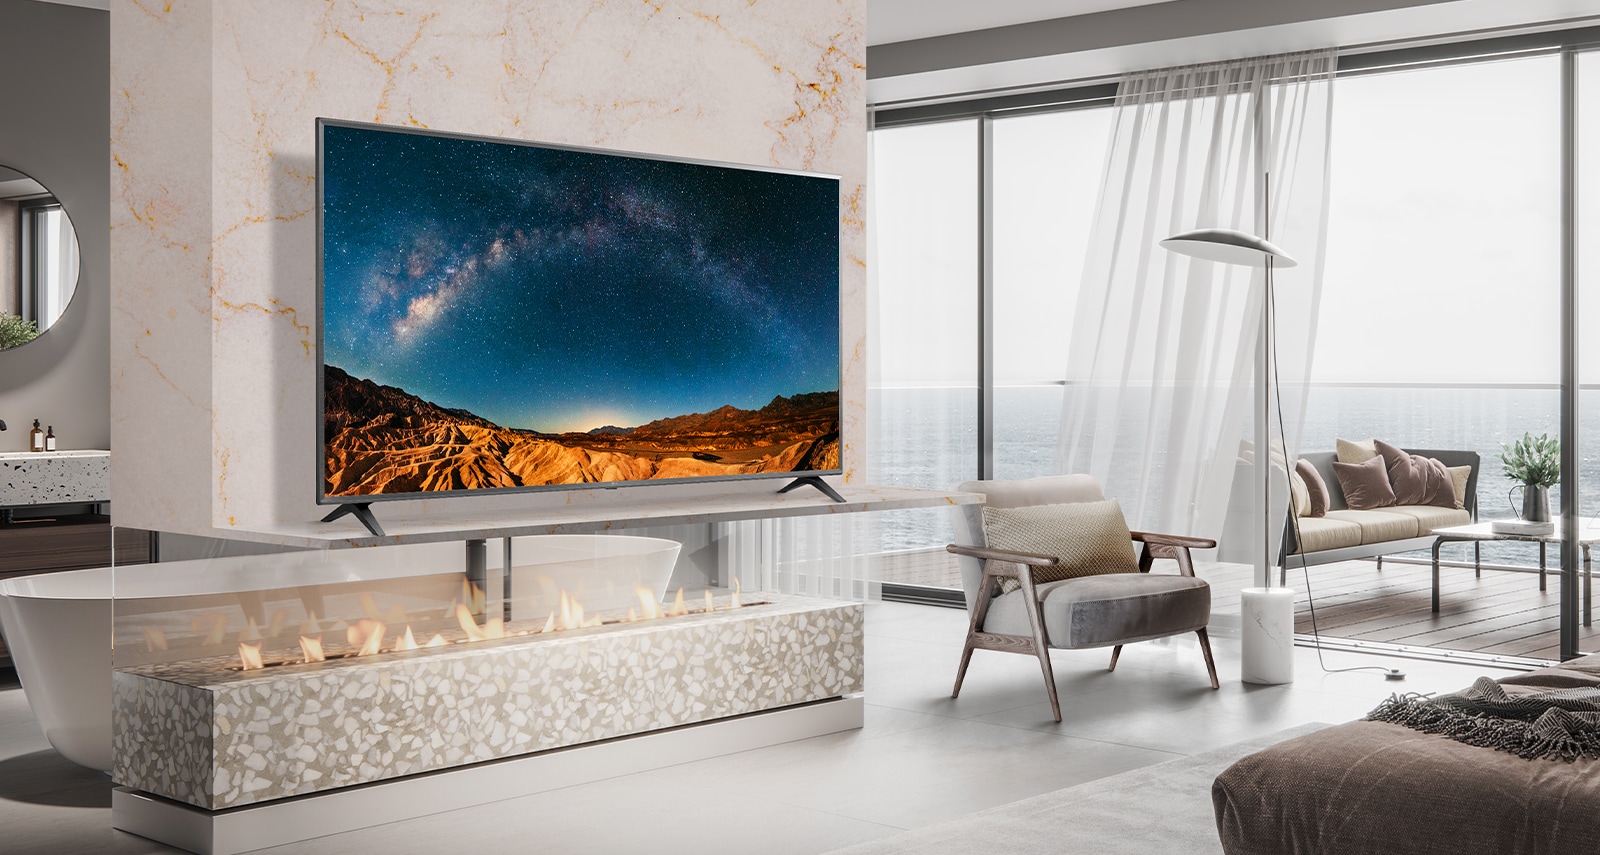 В простой спальне с видом на море на настенной полке стоит телевизор.  Голубой морской пейзаж на экране телевизора выглядит ярким и четким.